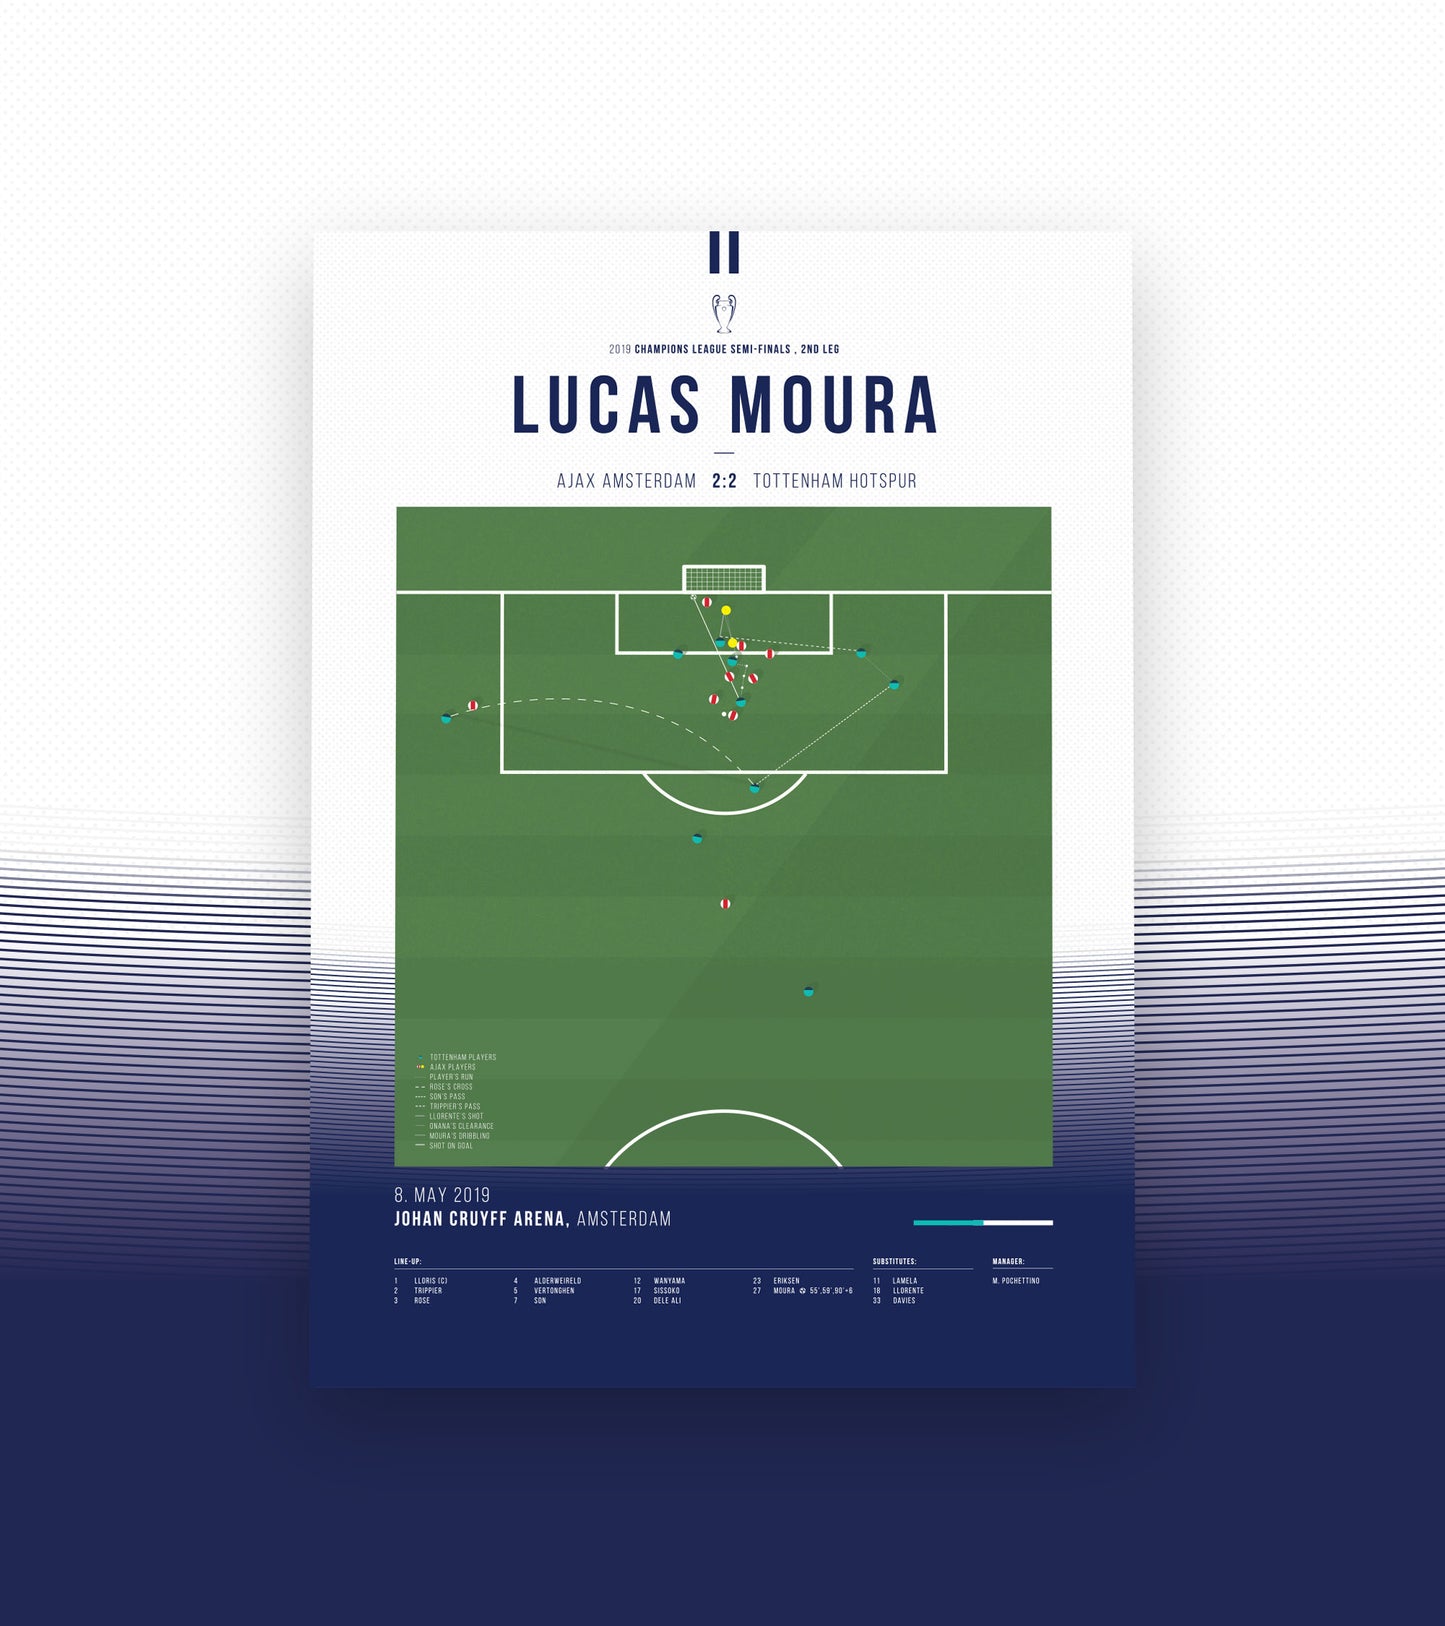 Dramático gol de Lucas Moura en el minuto 96 (2/3)